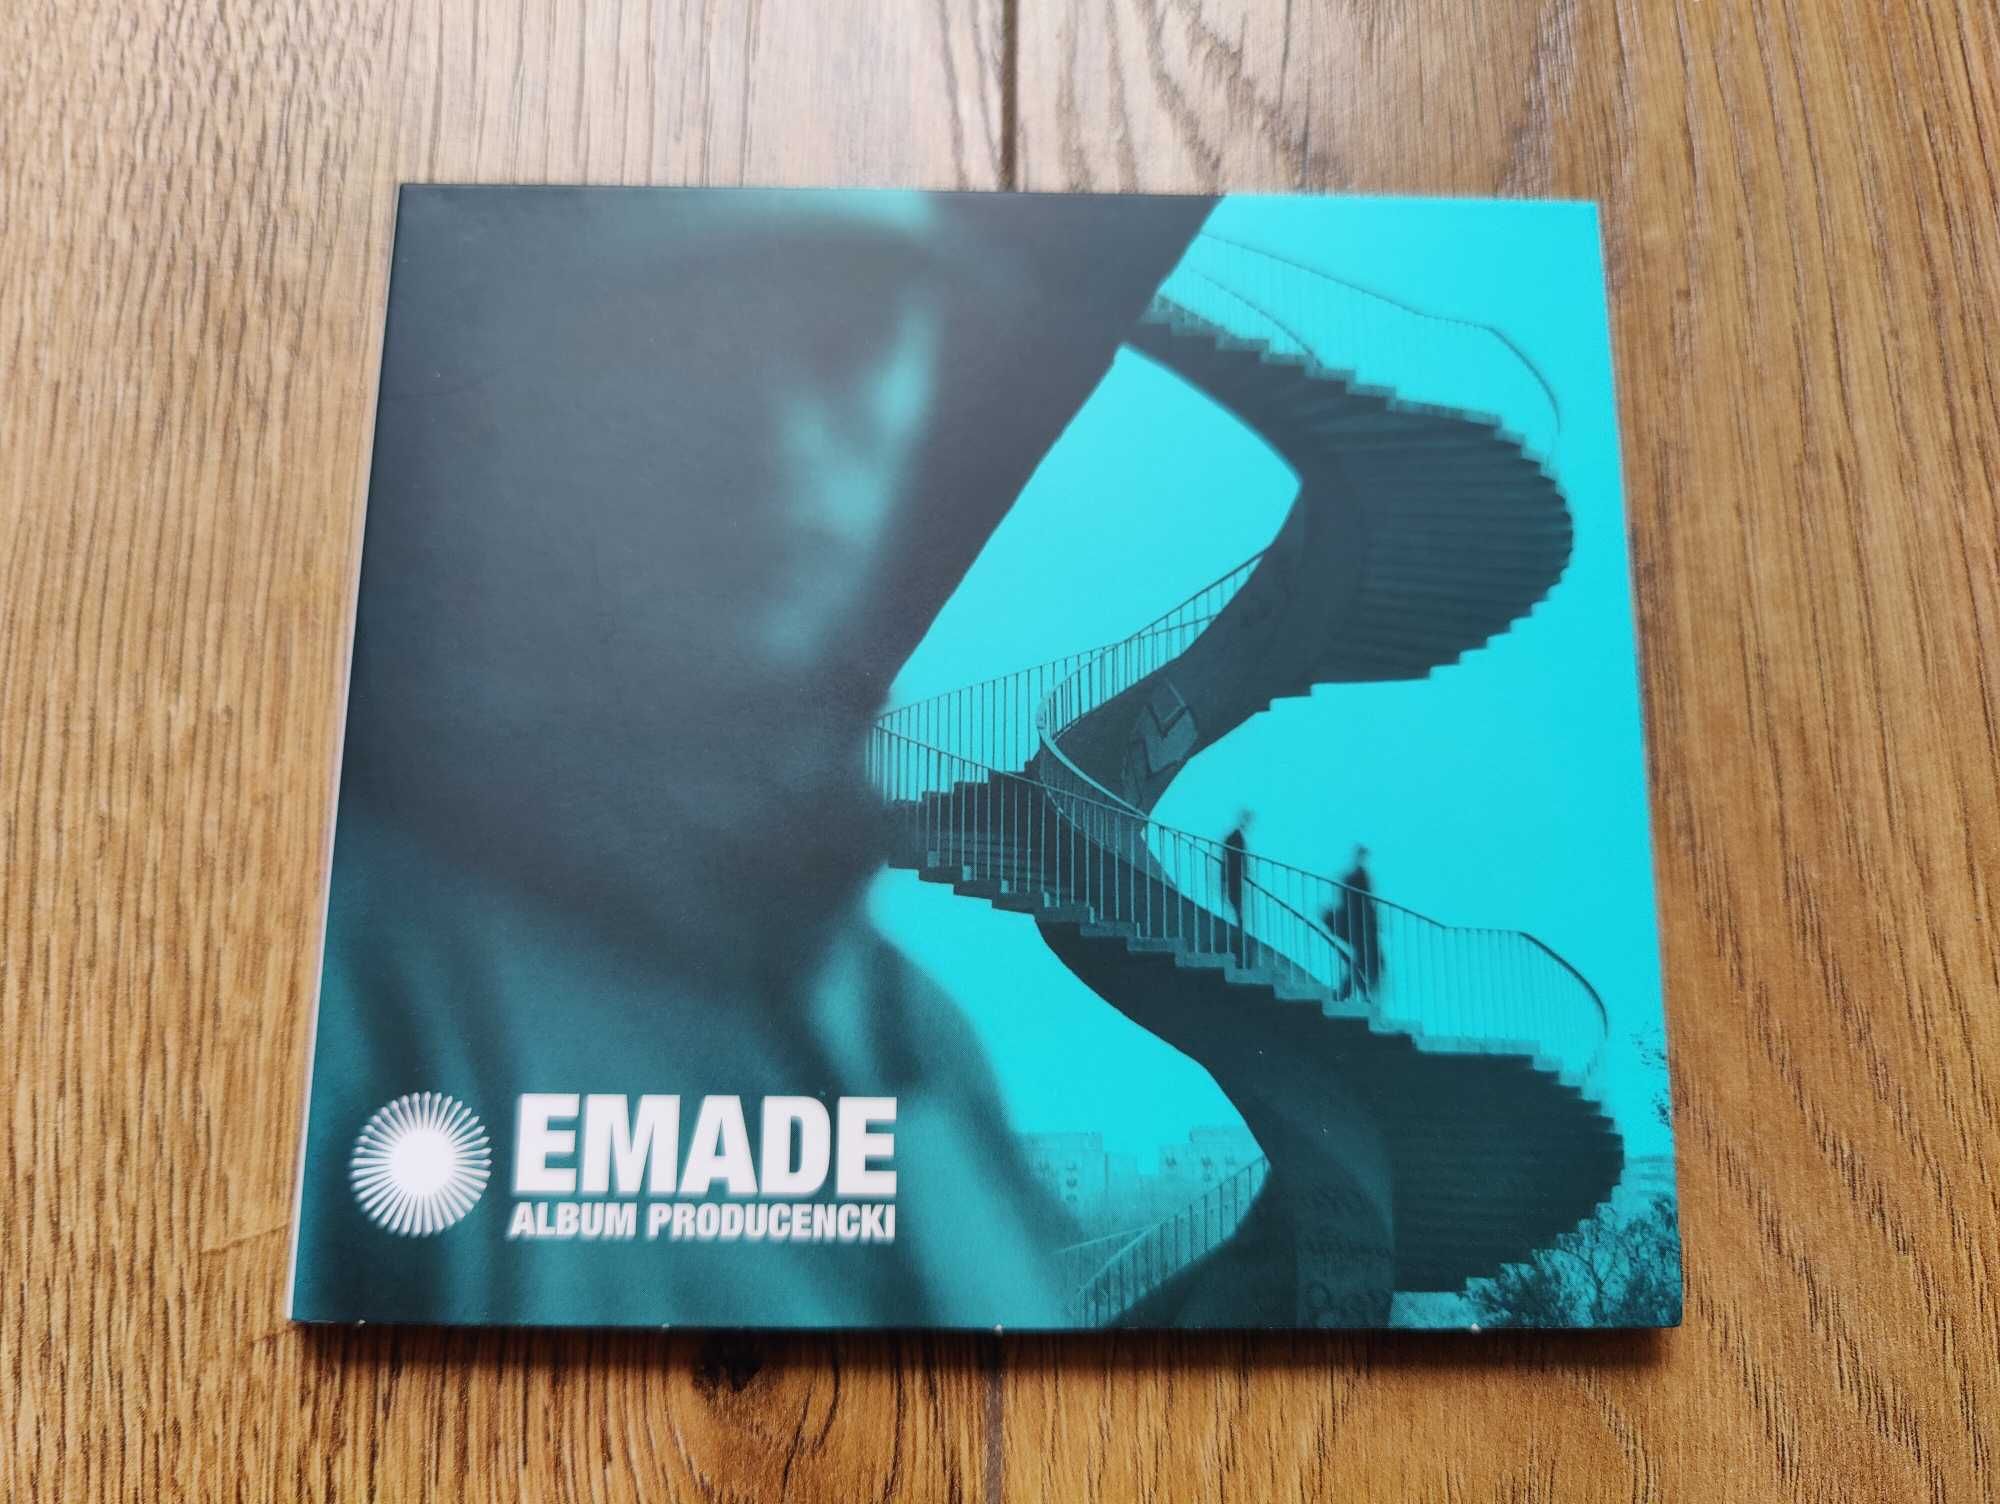 Emade - Album producencki (CD)